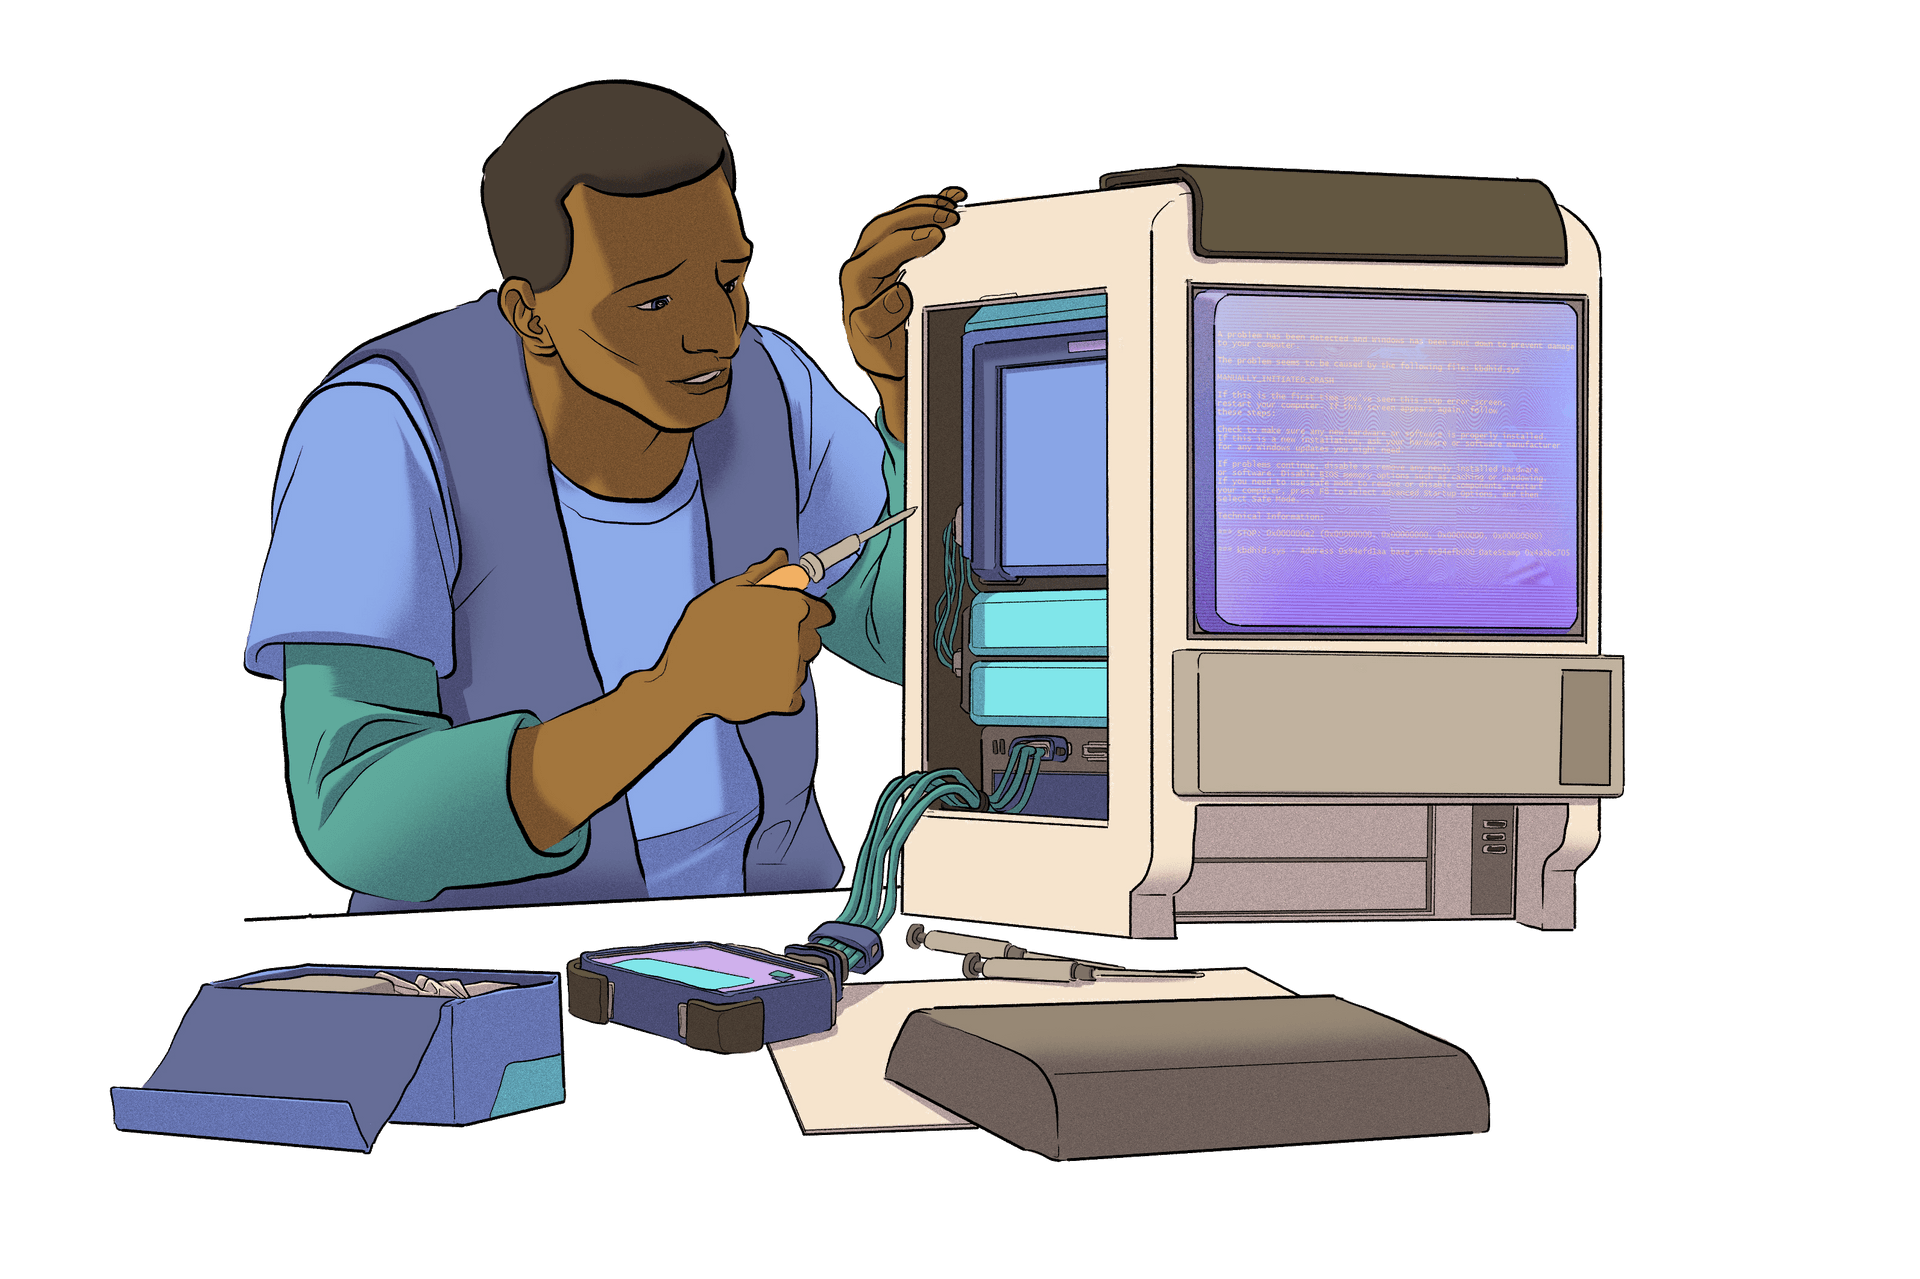 컴퓨터로 작업 중인 사람의 그림.